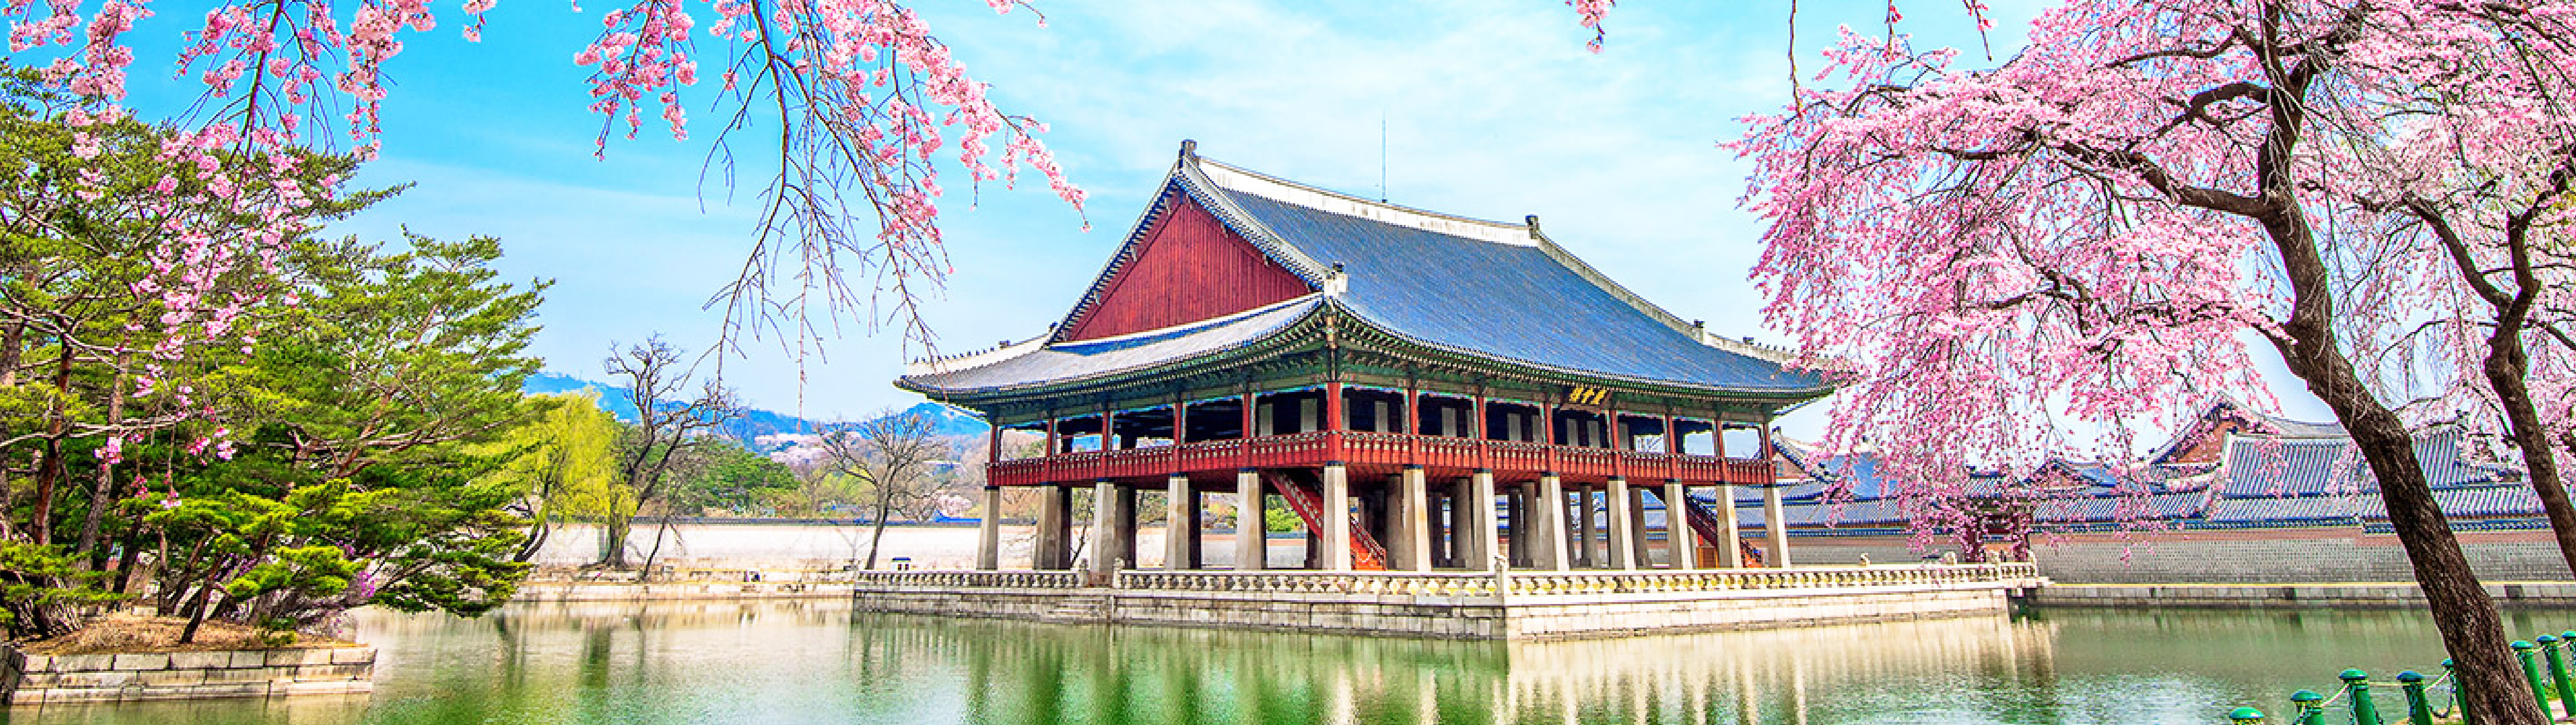 Hàn Quốc mùa hoa anh Đào